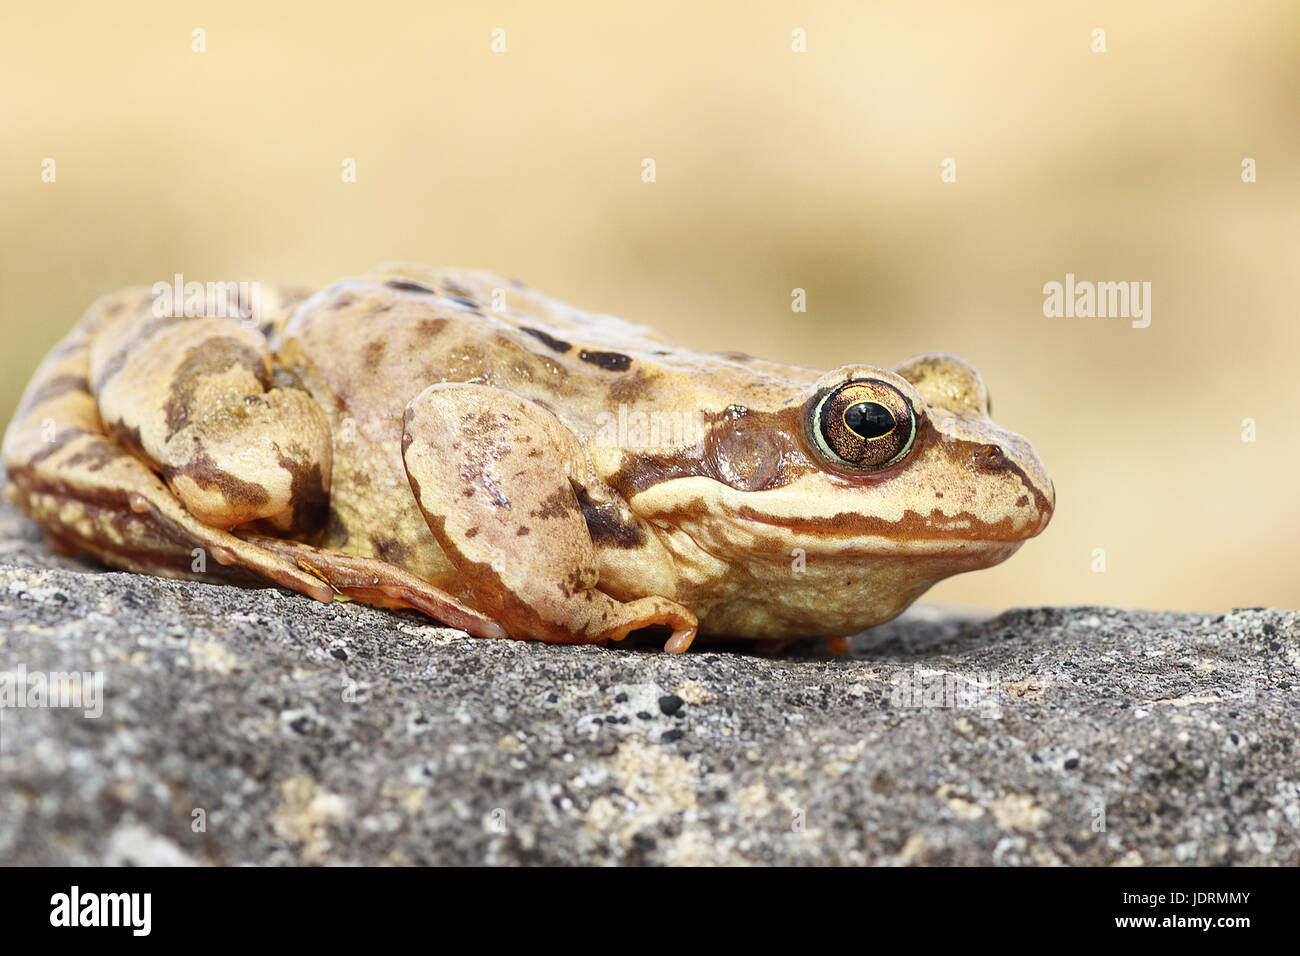 Voir le profil complet de l'Europe ( grenouille Rana temporaria ) Banque D'Images